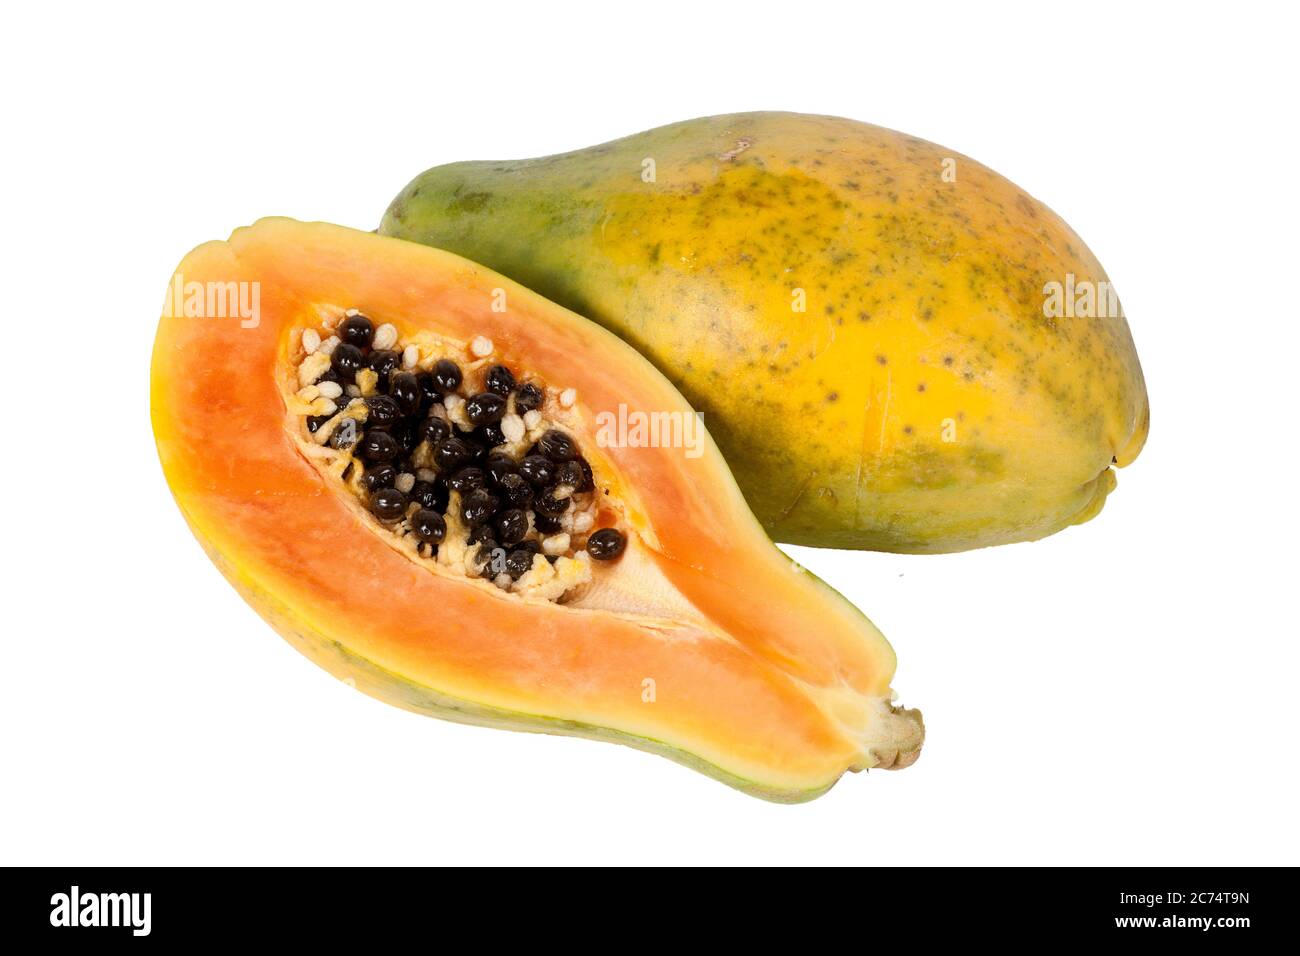 Fruits de papaye bio bruts coupés en deux qui ont beaucoup d'antioxydants alimentation nutrition santé avantages coupés et isolés sur un fond blanc Banque D'Images